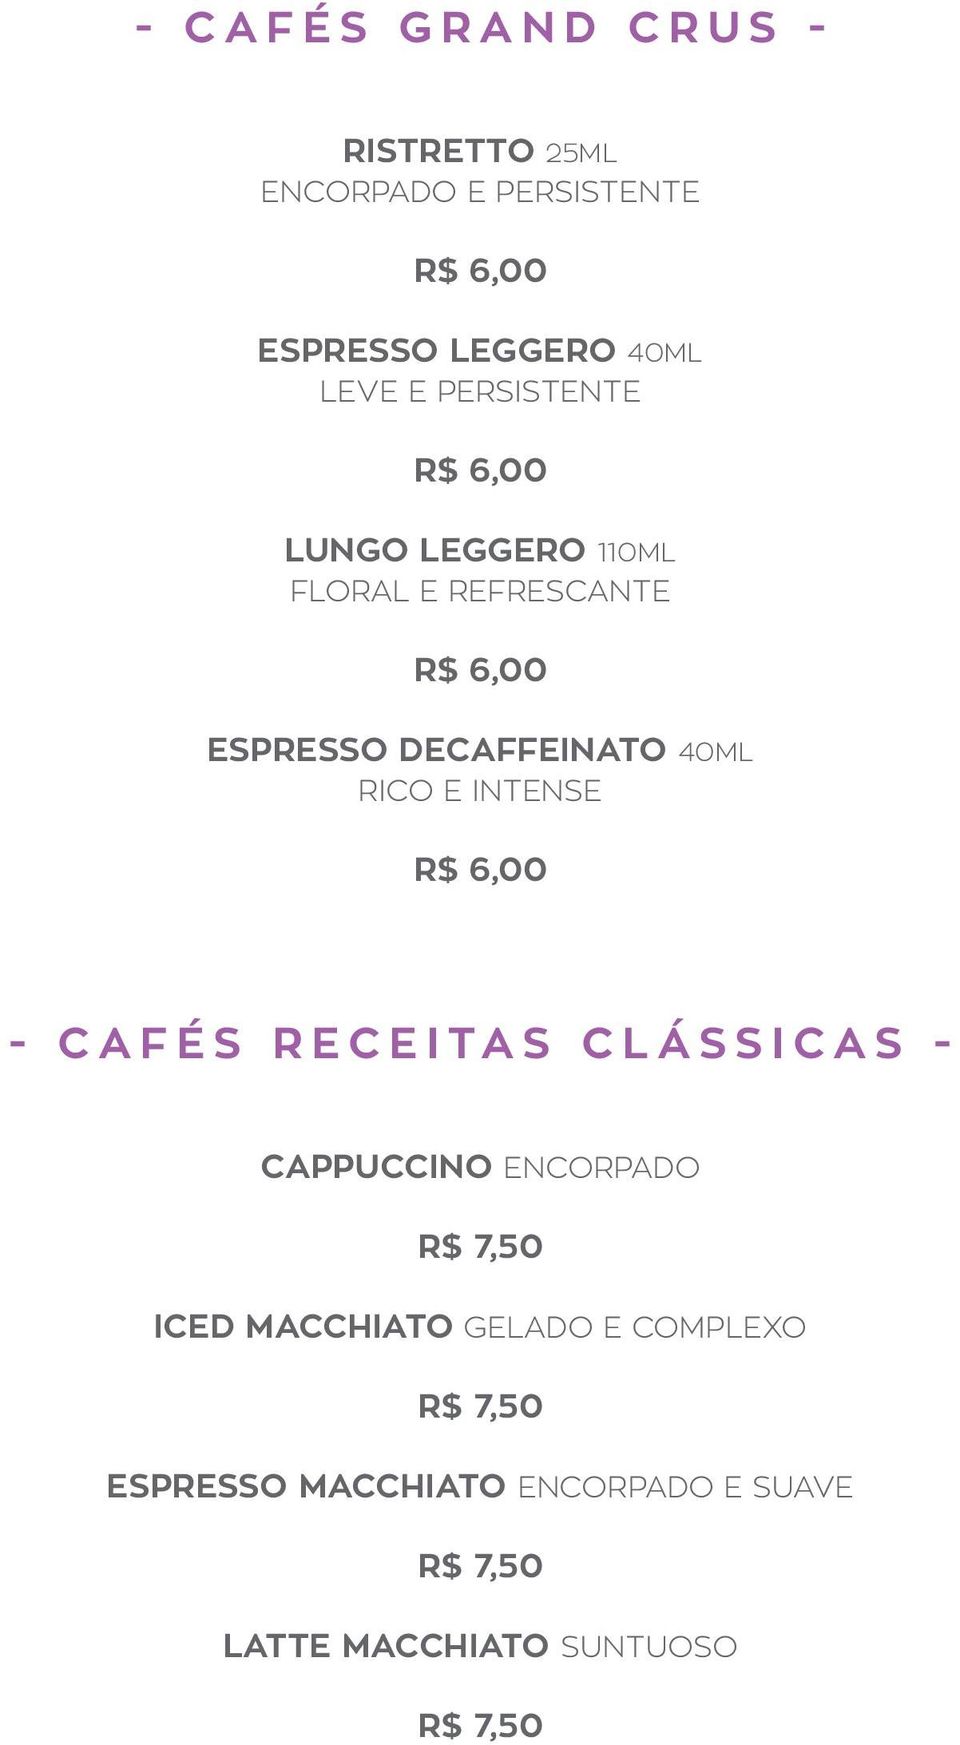 RICO E INTENSE R$ 6,00 - CAFÉS RECEITAS CLÁSSICAS - CAPPUCCINO ENCORPADO R$ 7,50 ICED MACCHIATO